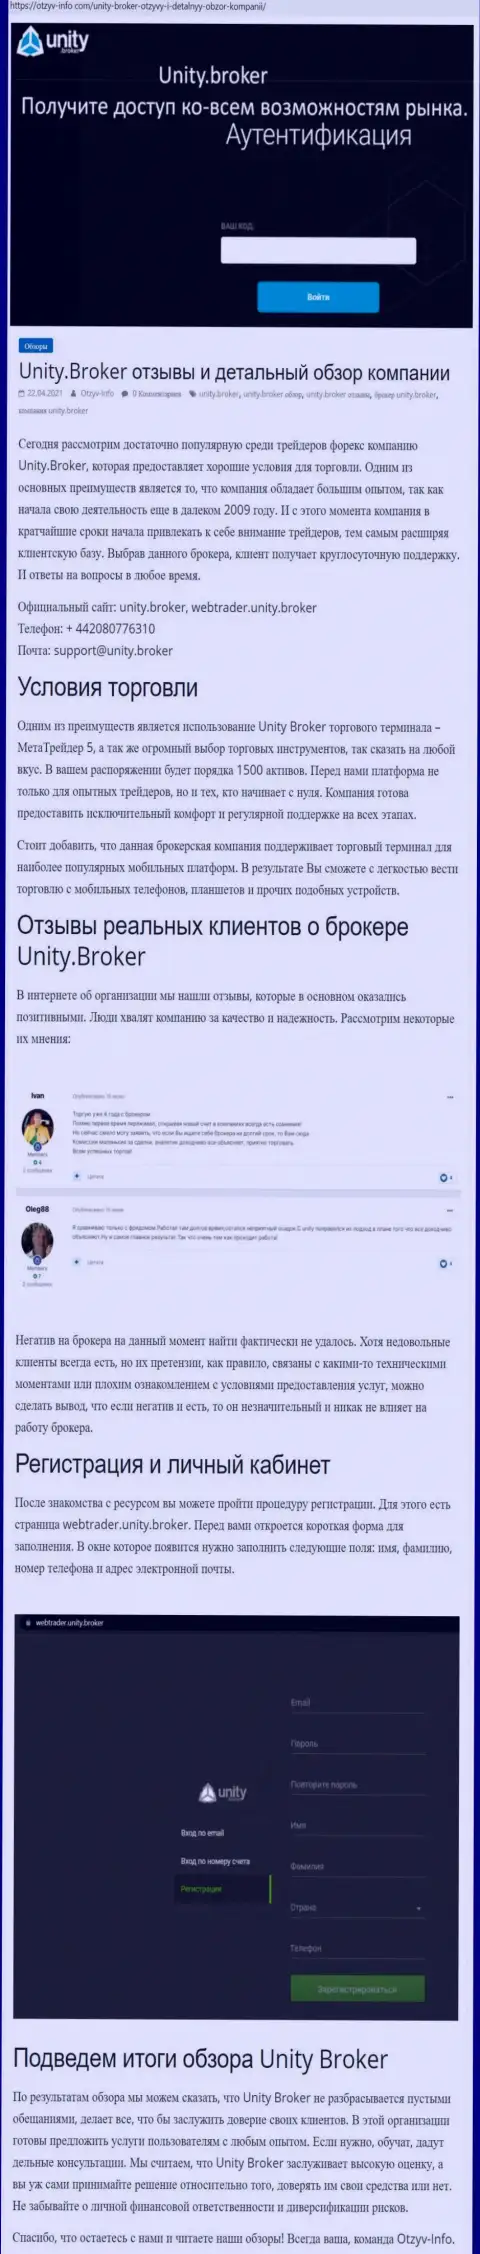 Обзор деятельности форекс-организации Unity Broker на сайте Отзыв-Инфо Ком